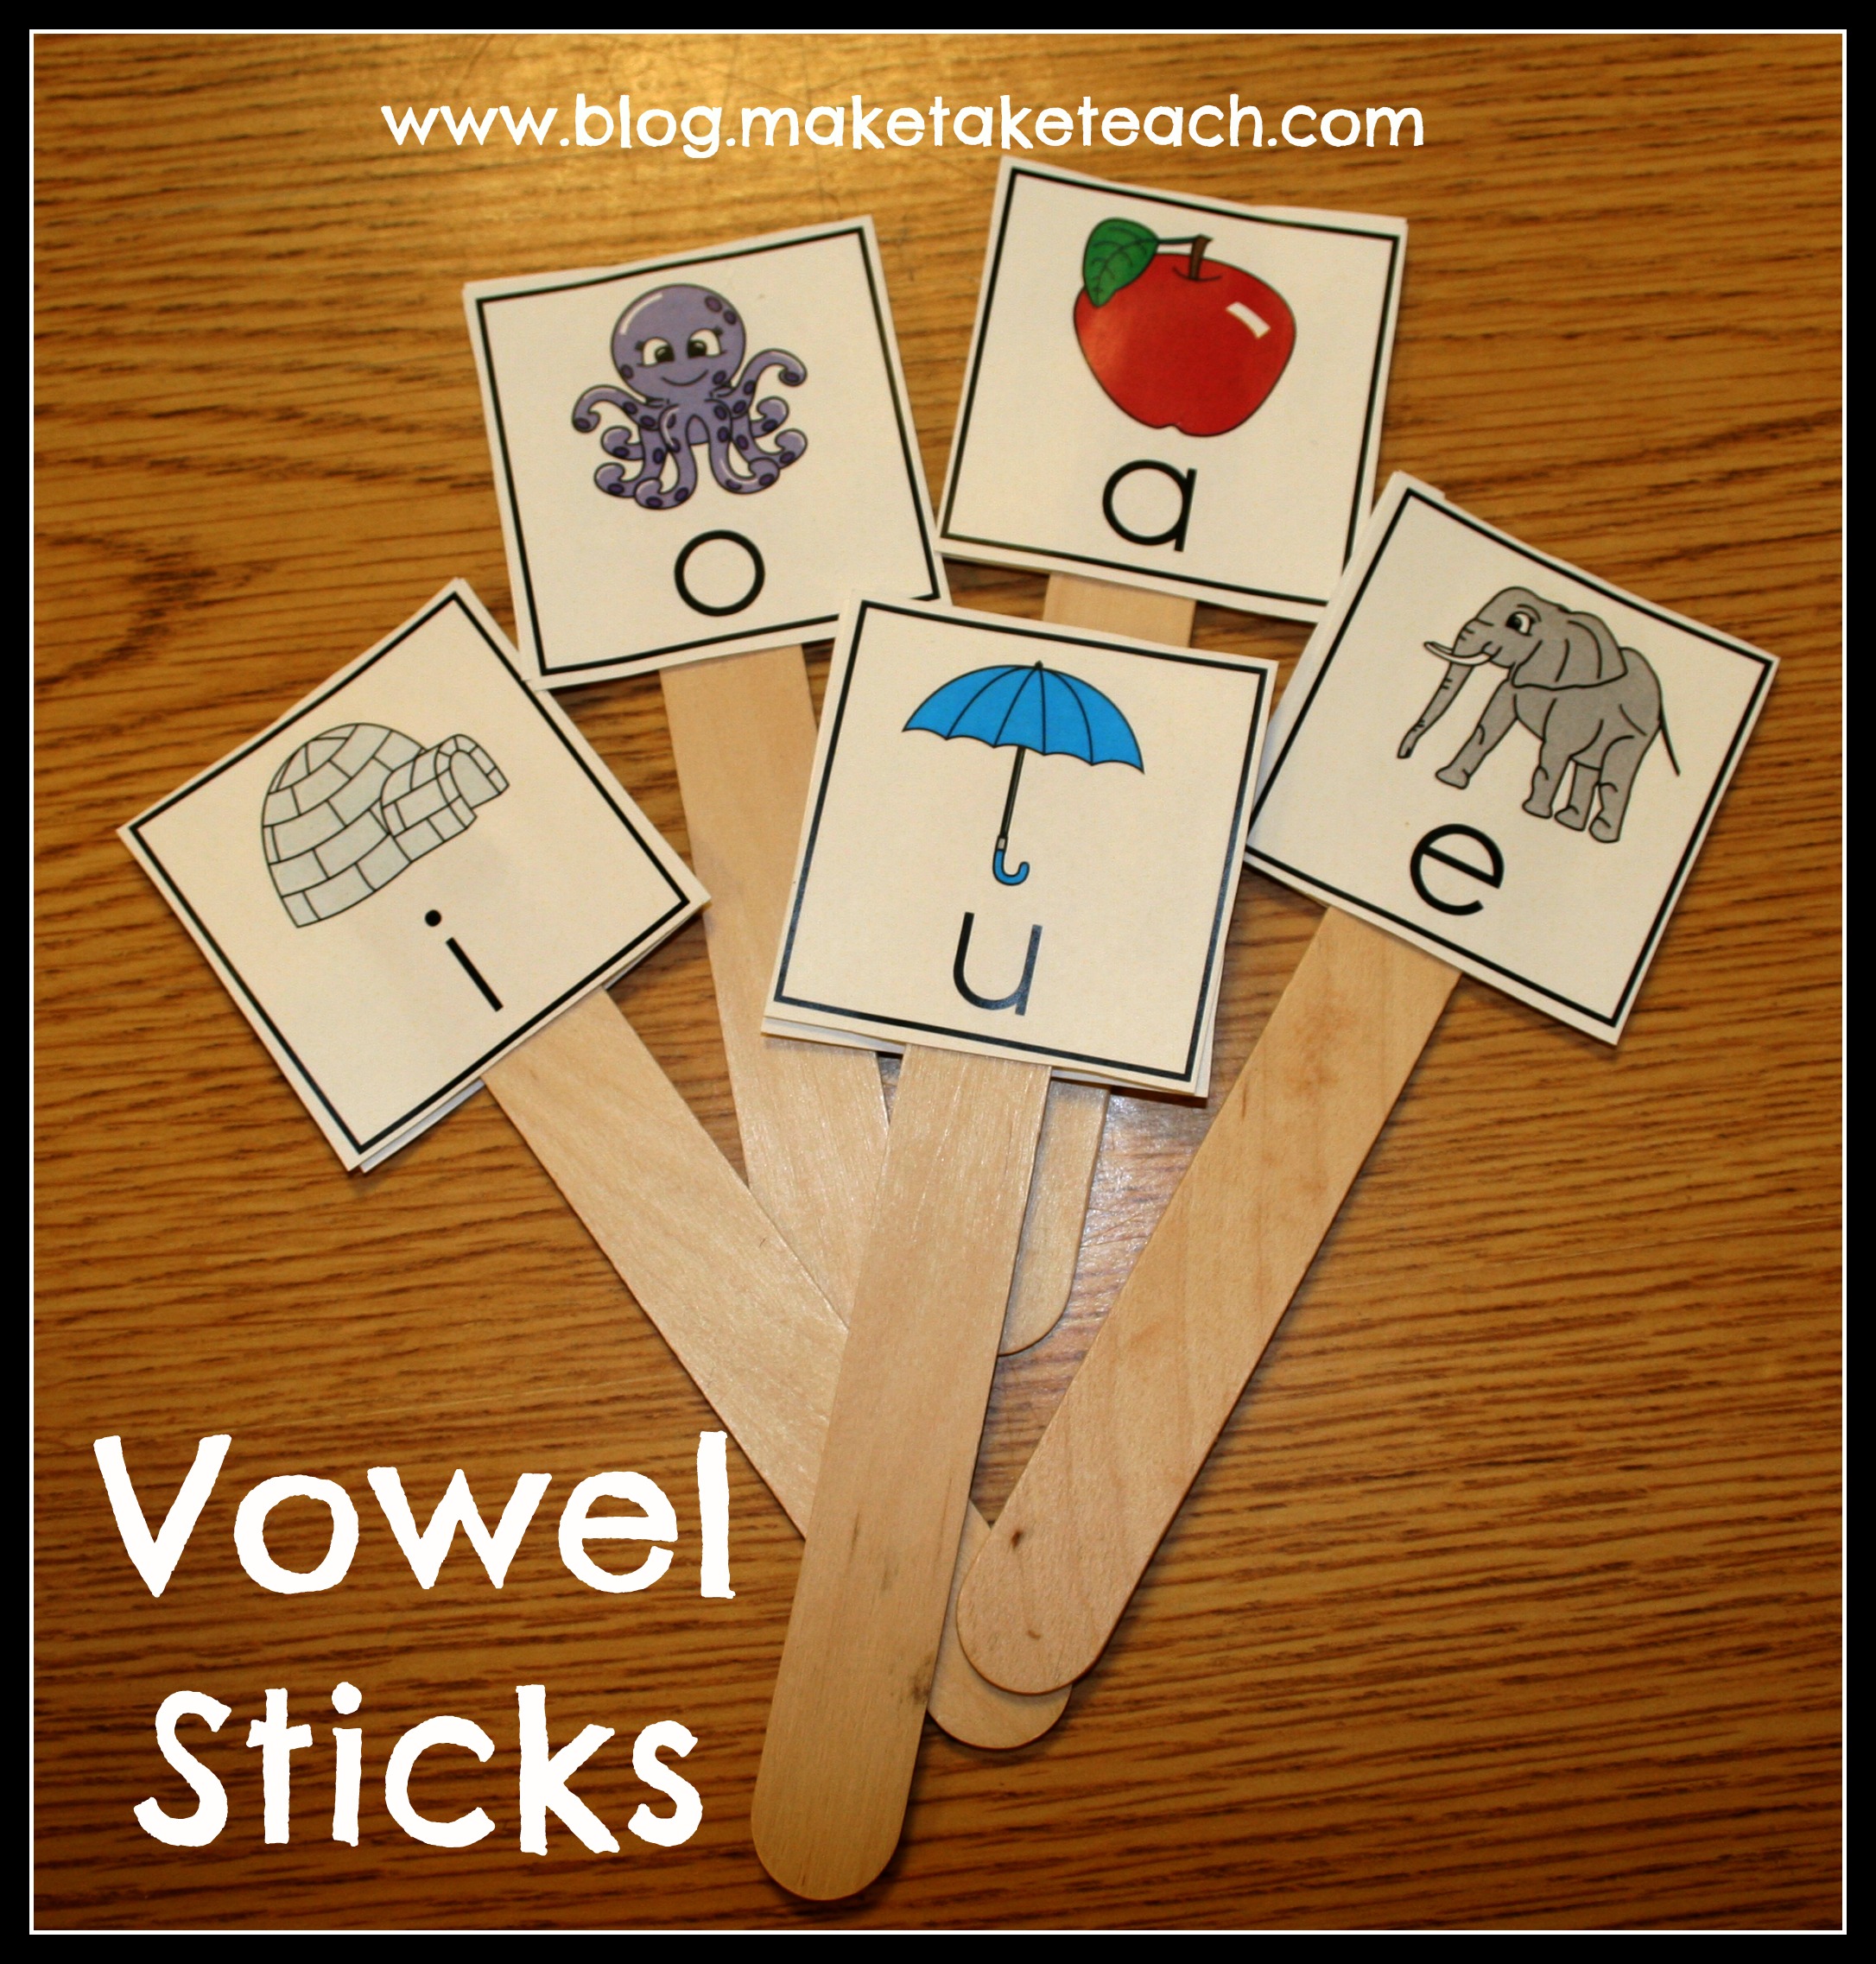 what makes a vowel a vowel